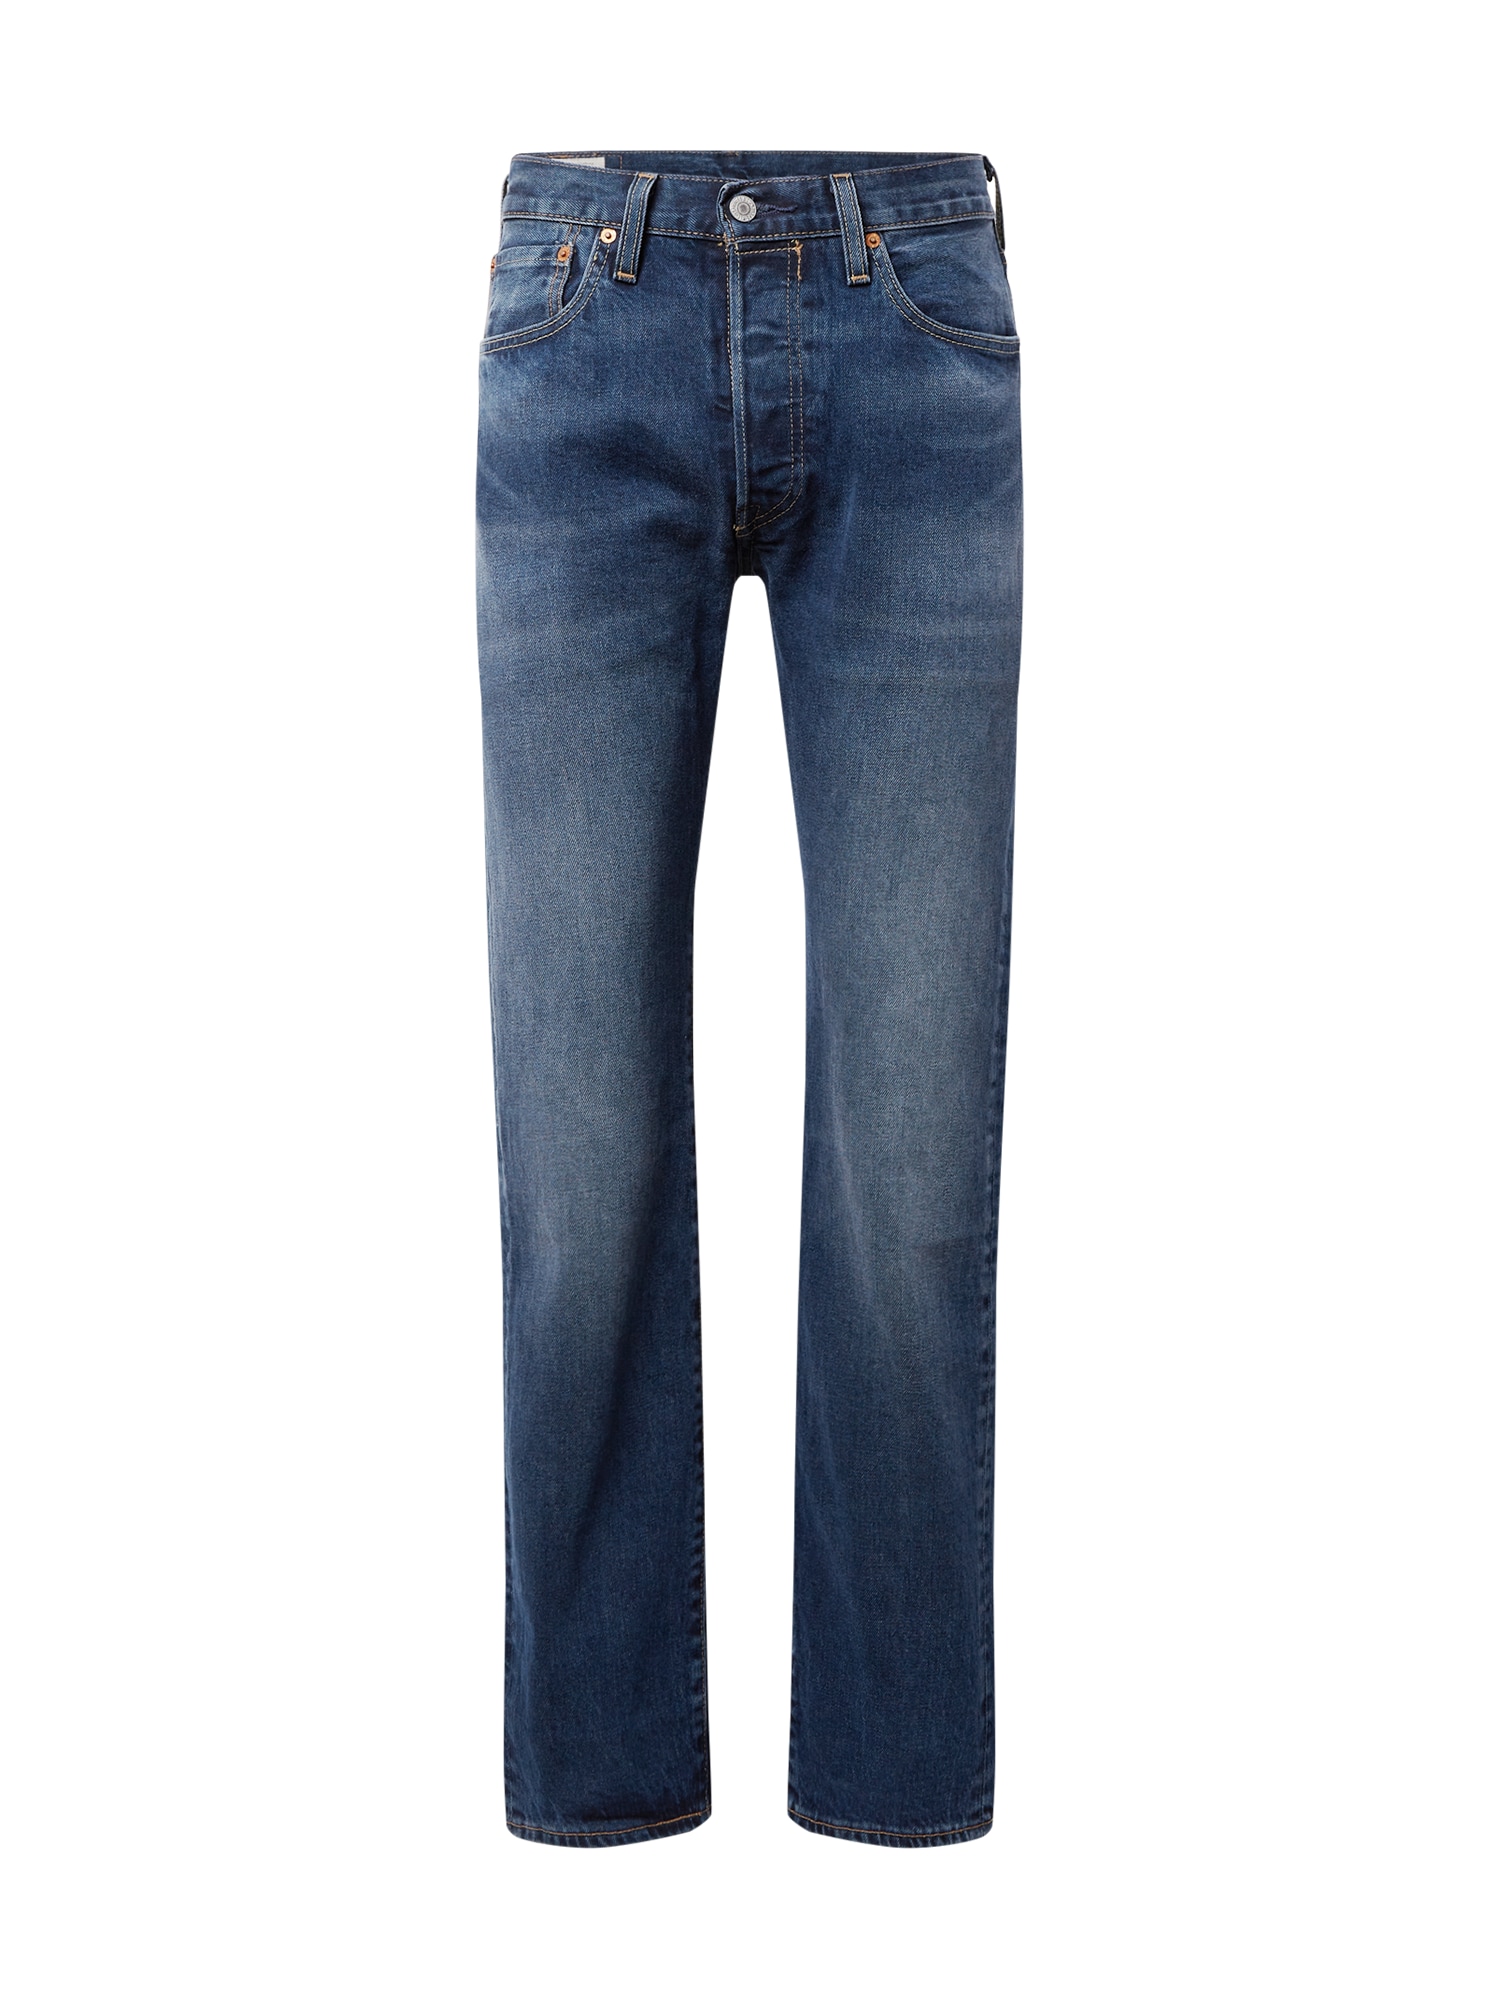 Jeans '501' von Levis